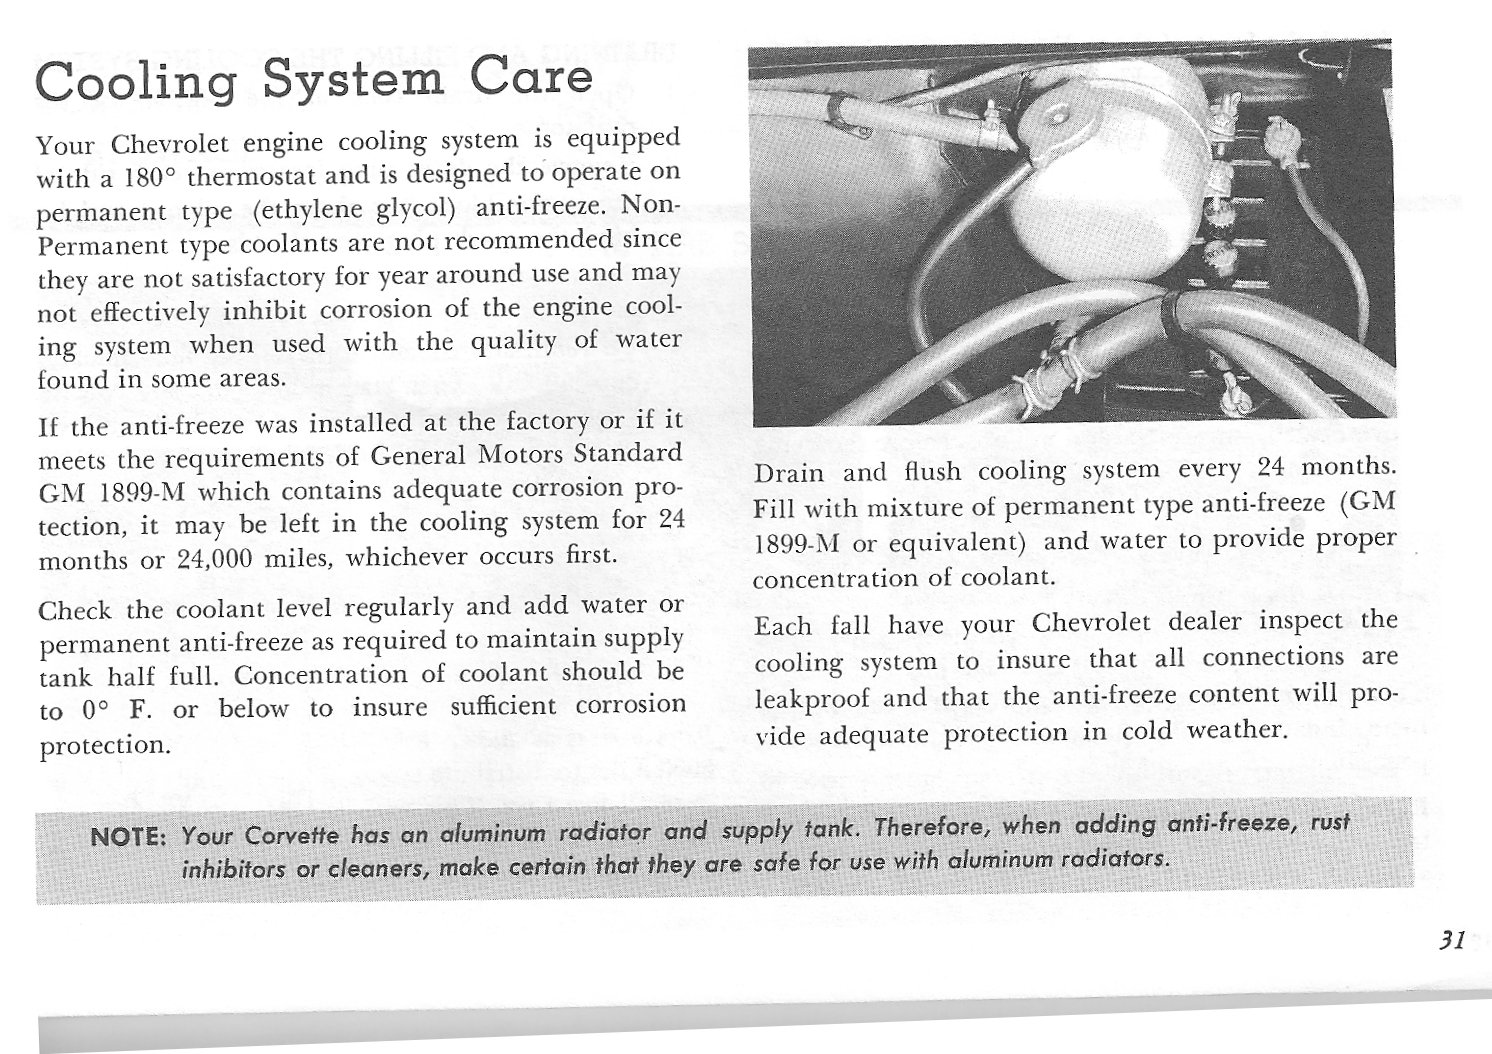 1964 Corvette Owners Manual-32